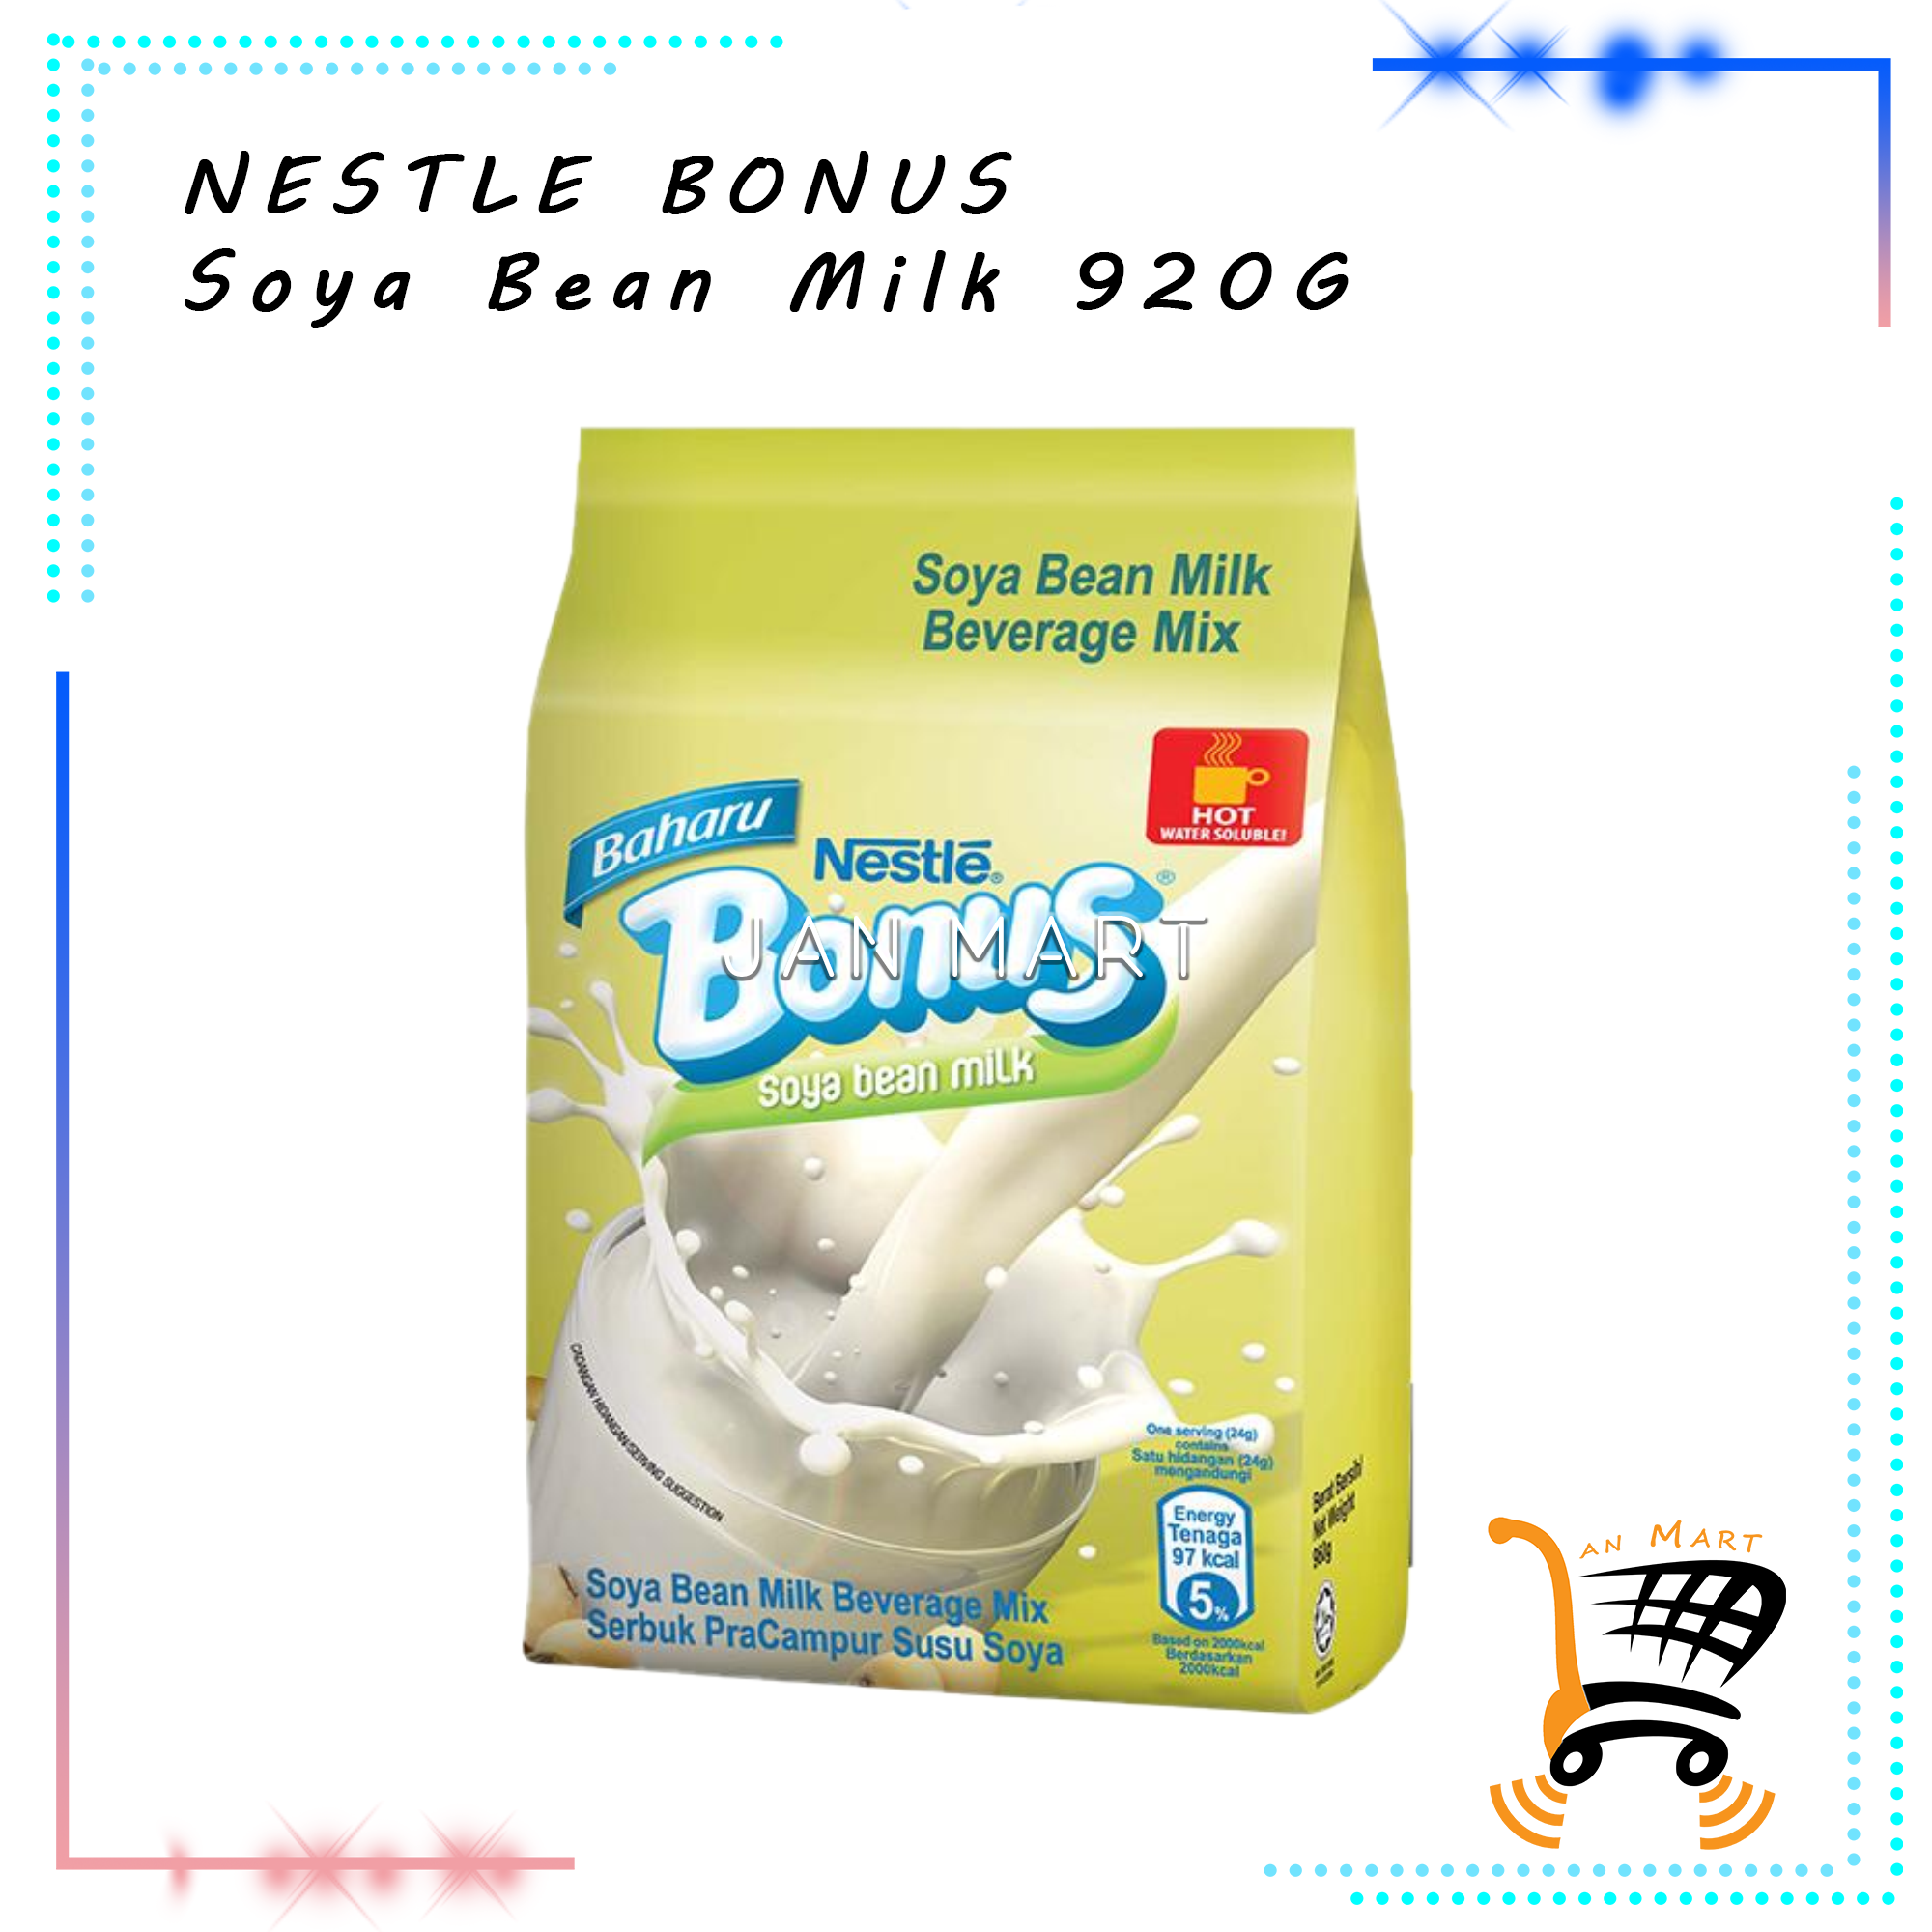 NESTLE Bonus Soya Bean Milk 920G